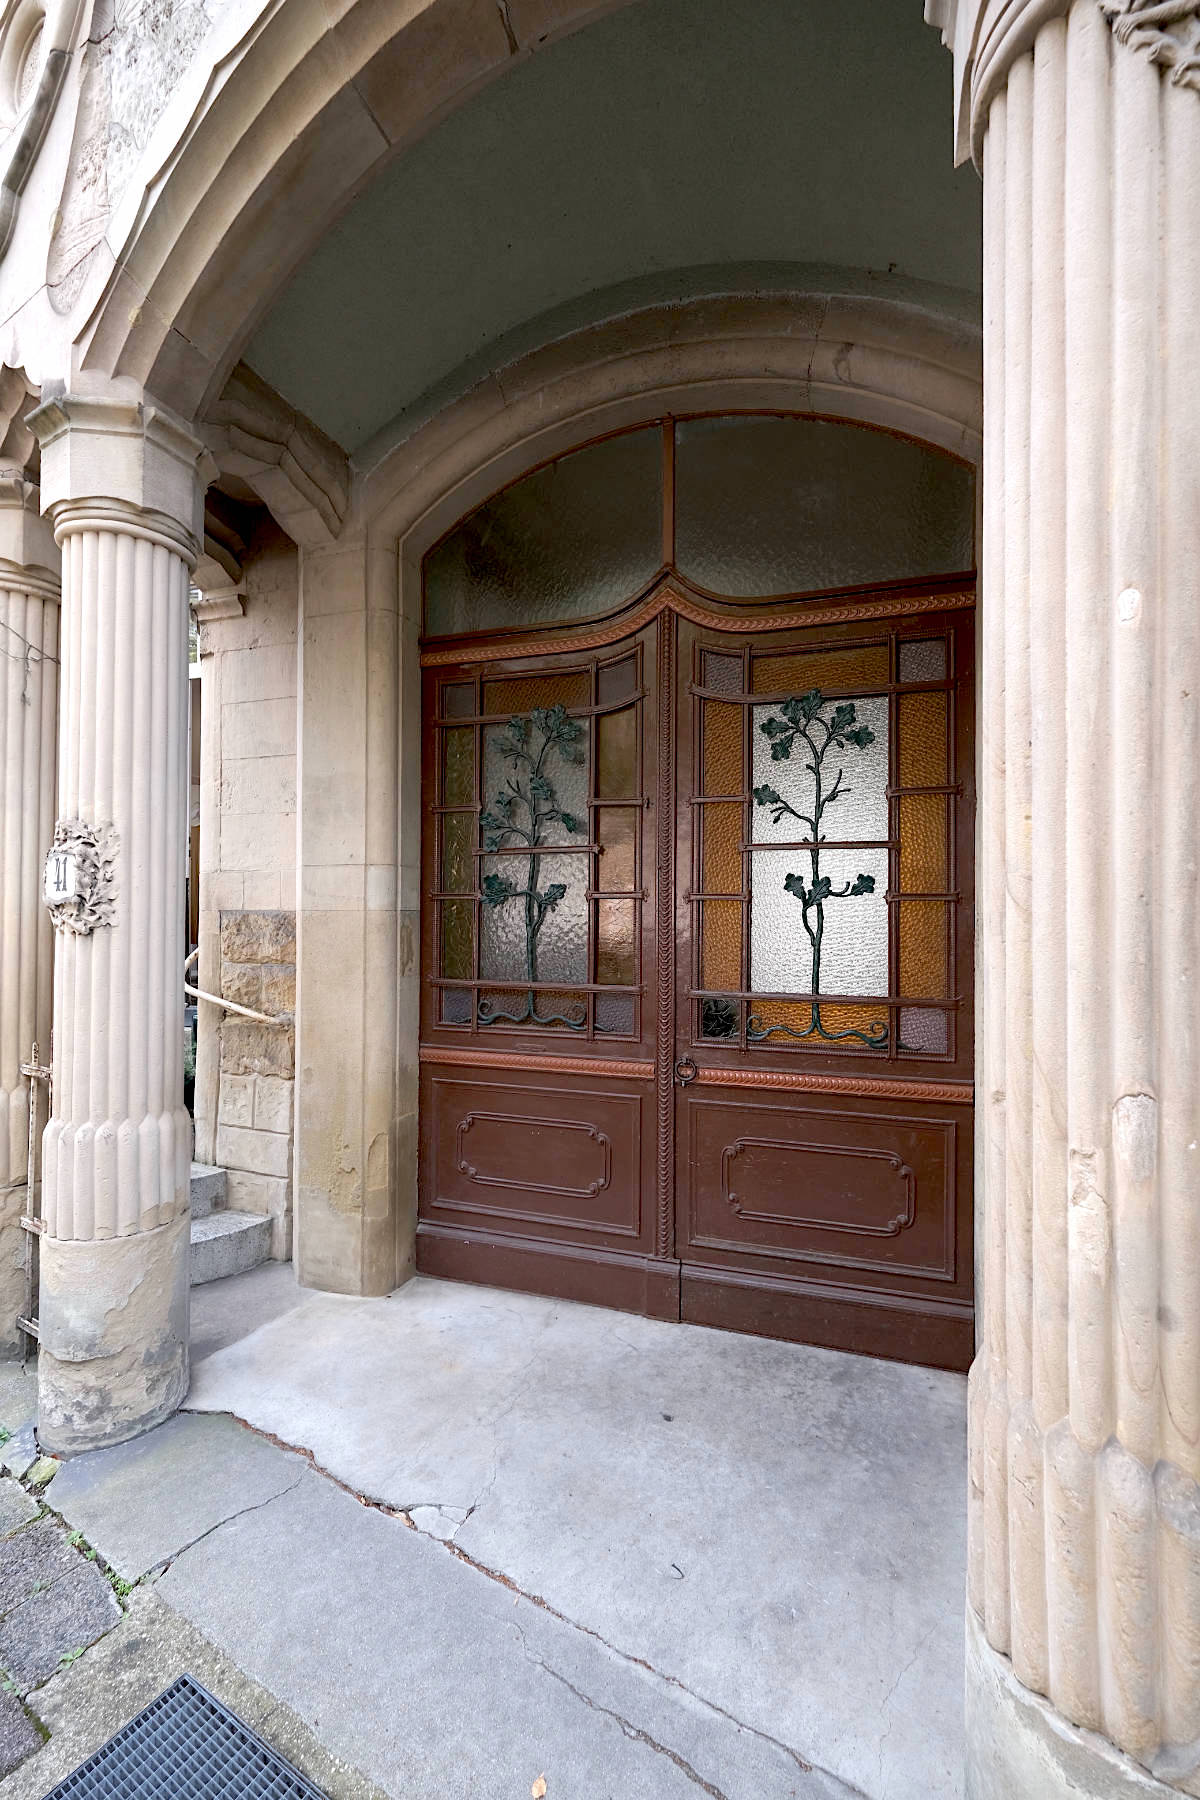 Das Wohnhaus mit floralem Eingangsbereich in der Yorkstraße 41 wurde 1904 von Ludwig Trunzer errichtet.